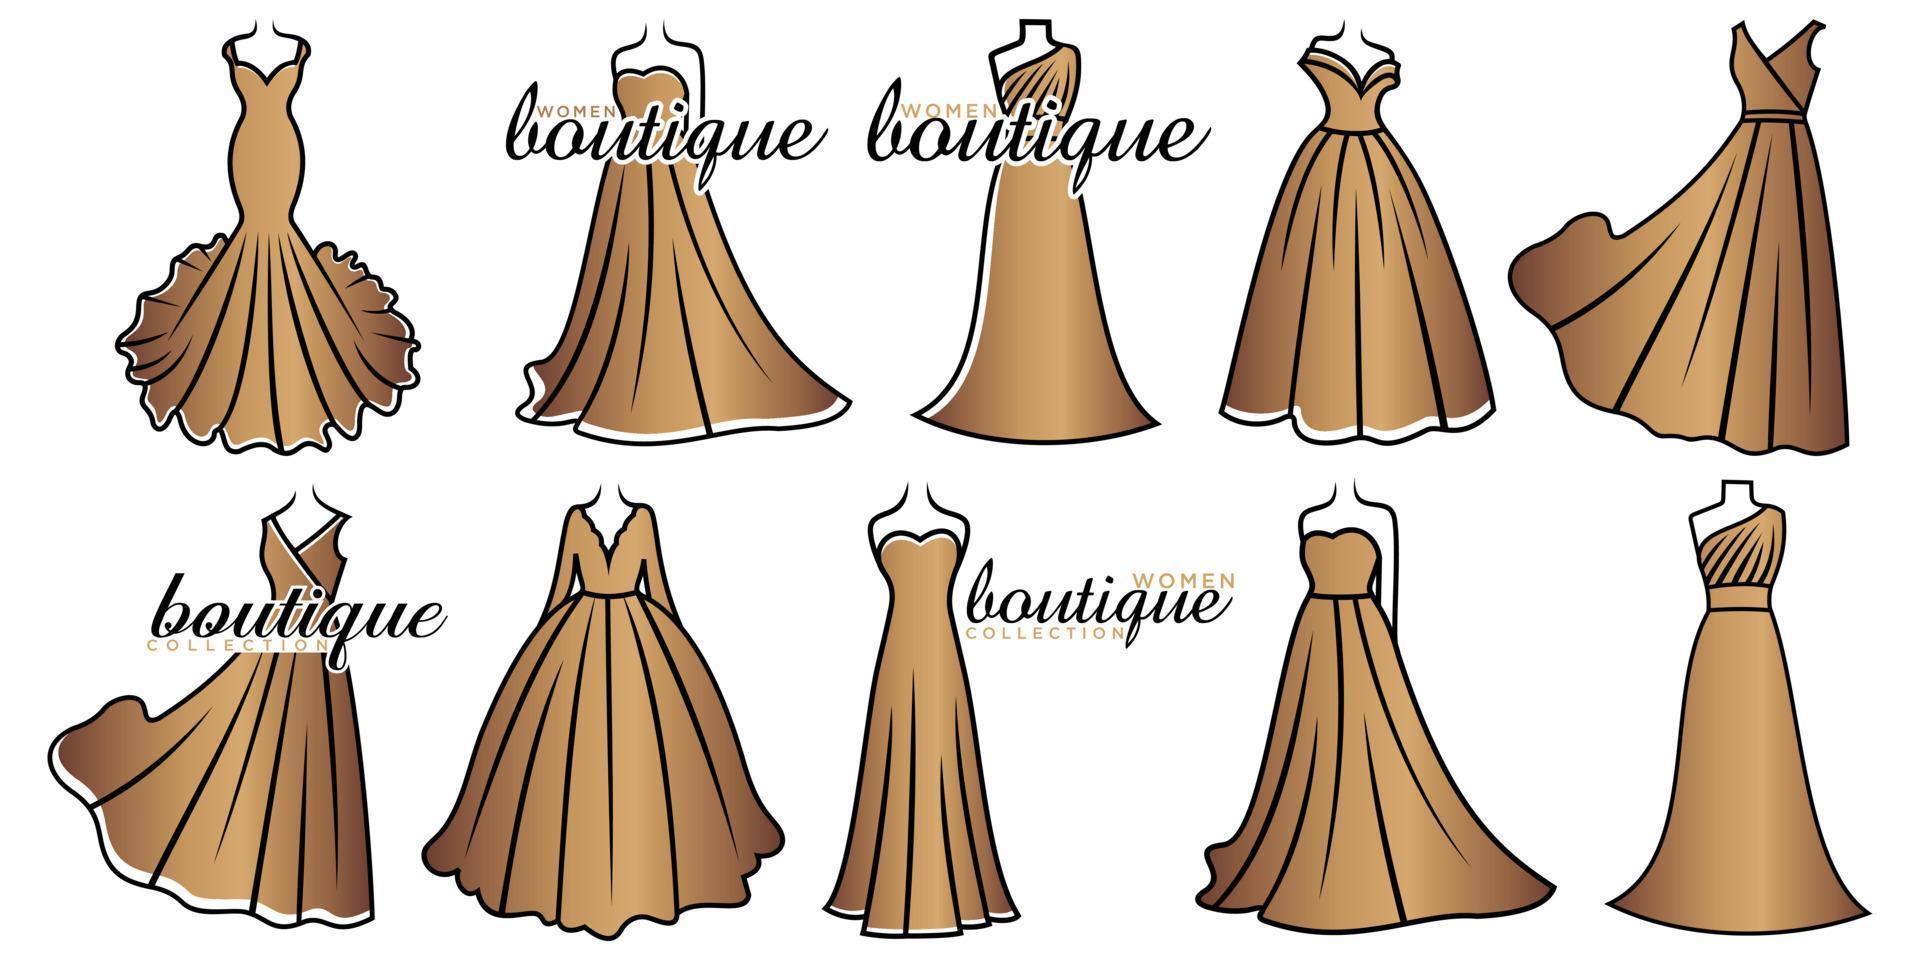 trouwjurk boutique bruids pictogrammenset logo vector sjabloon illustratie ontwerp